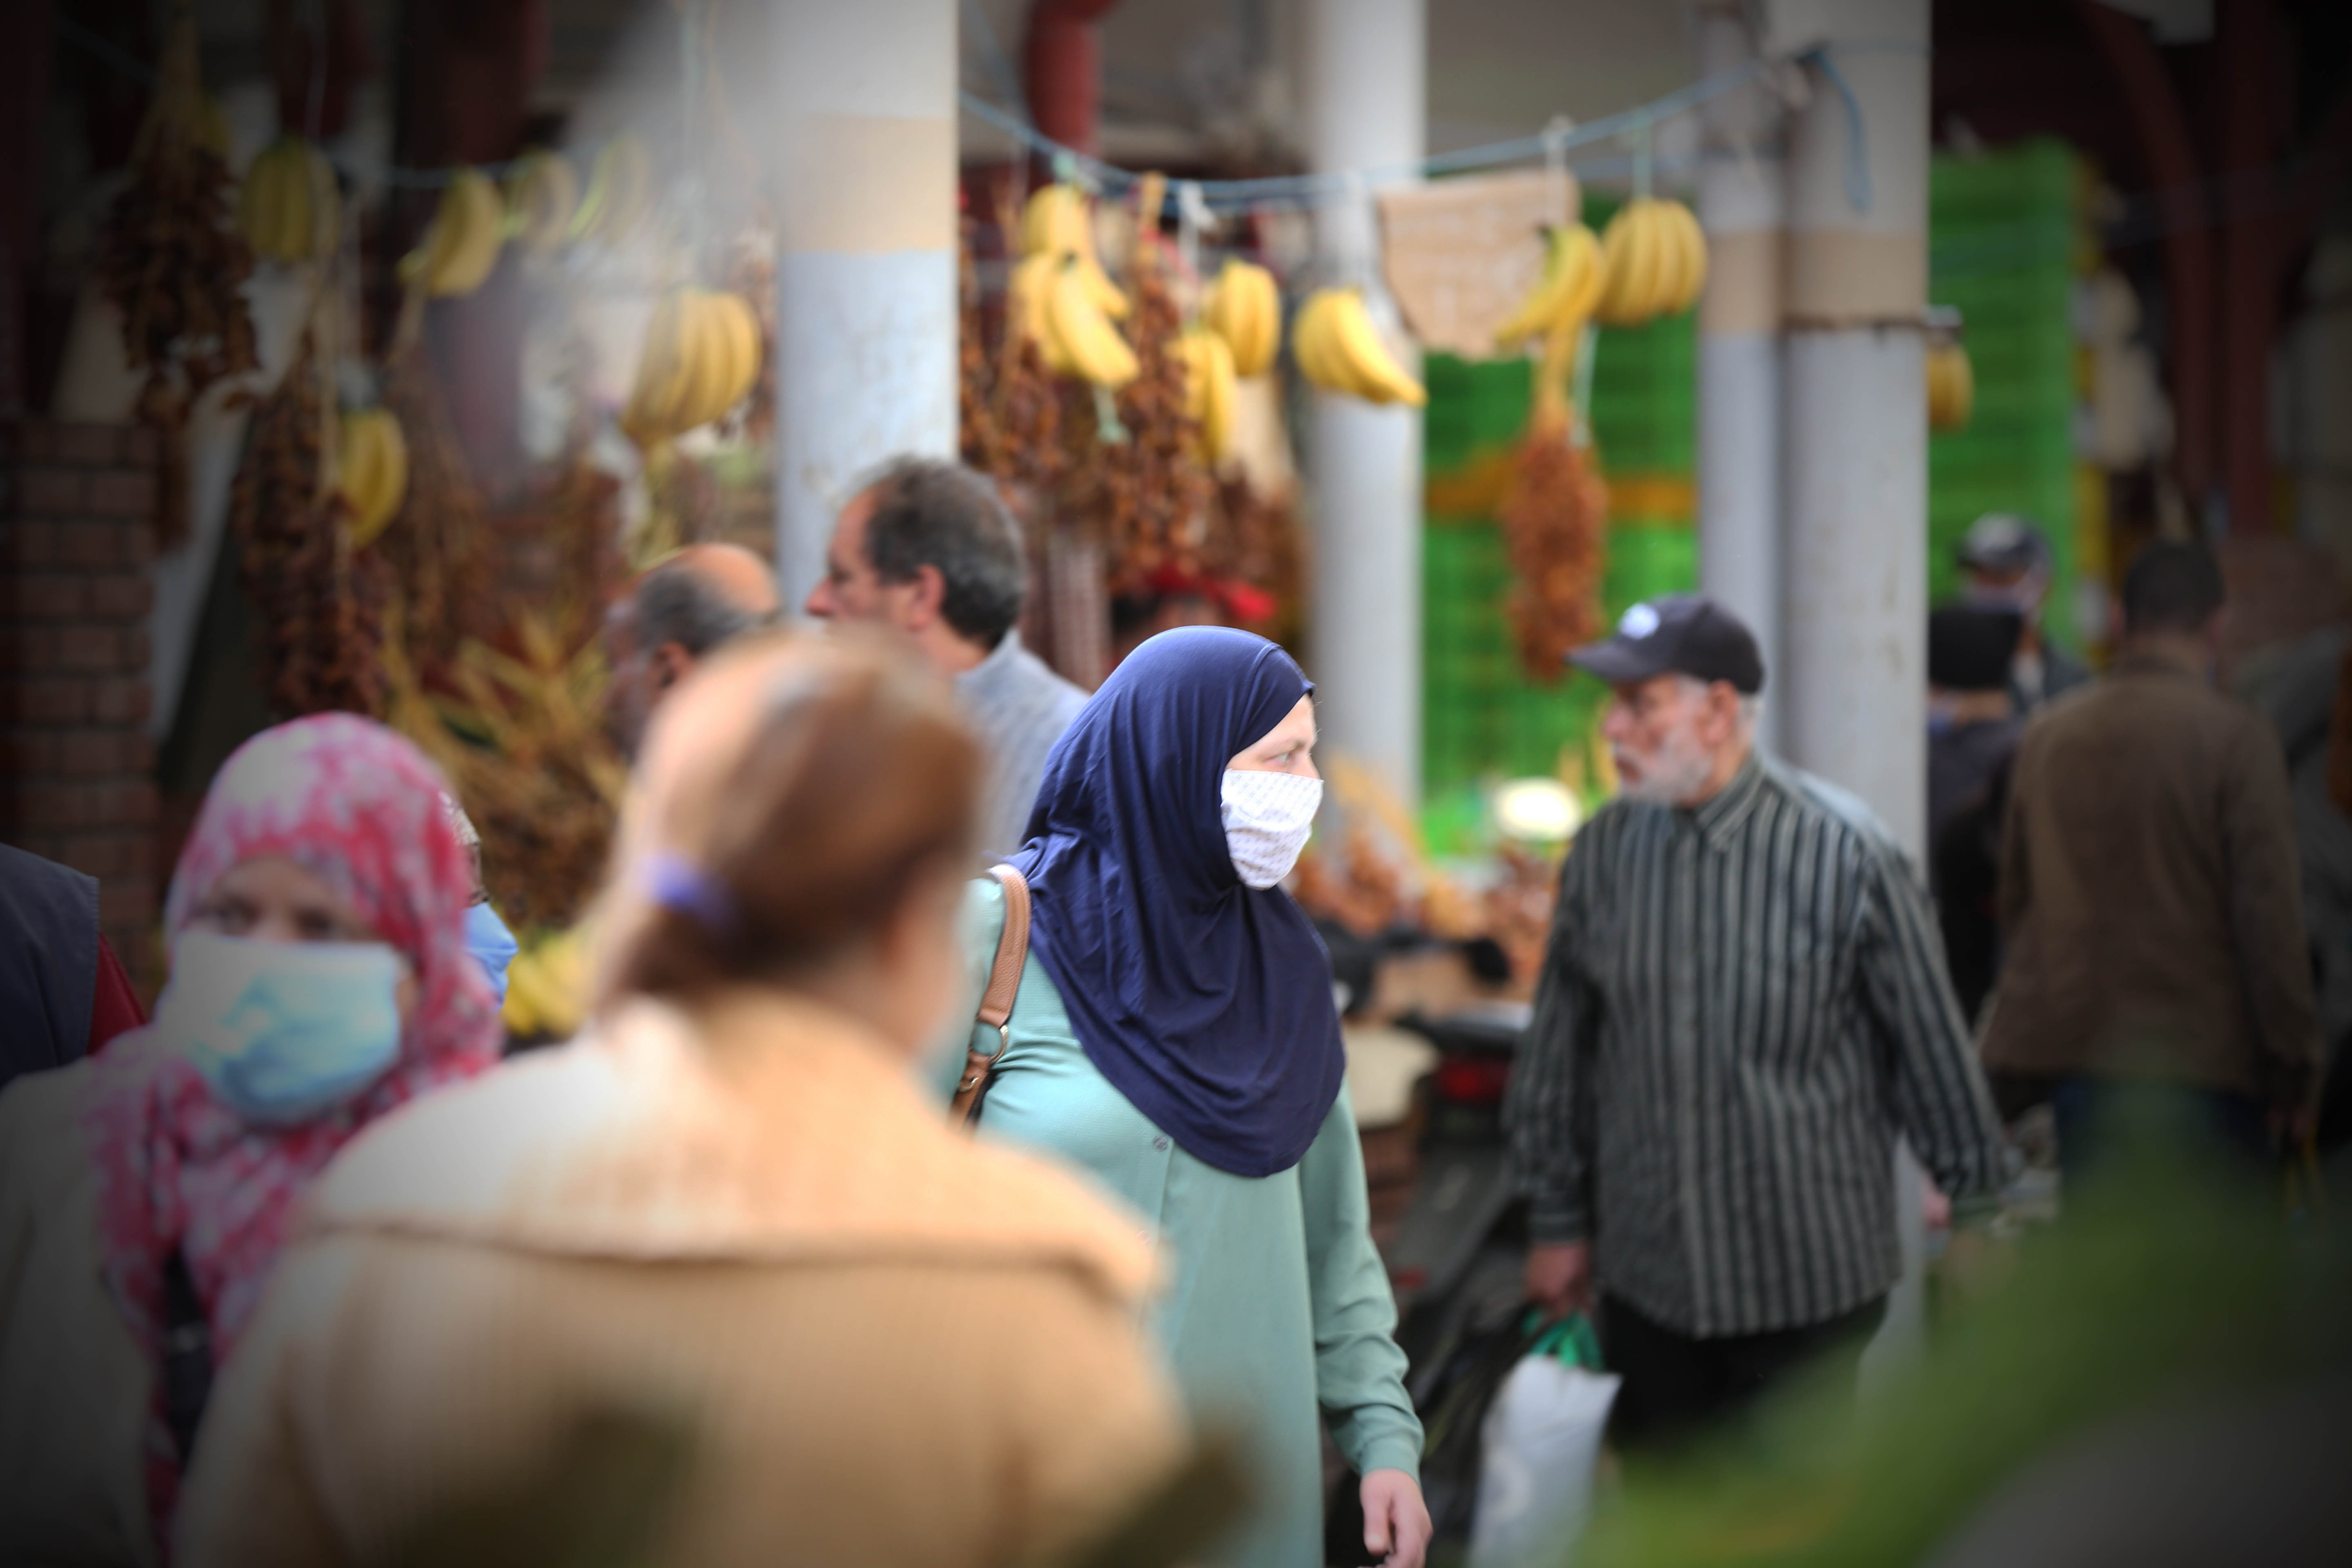 زبائن يشترون حاجياتهم من السوق المركزي في العاصمة تونس في أول أيام رمضان، تونس في 28 أبريل/نيسان 2020. 